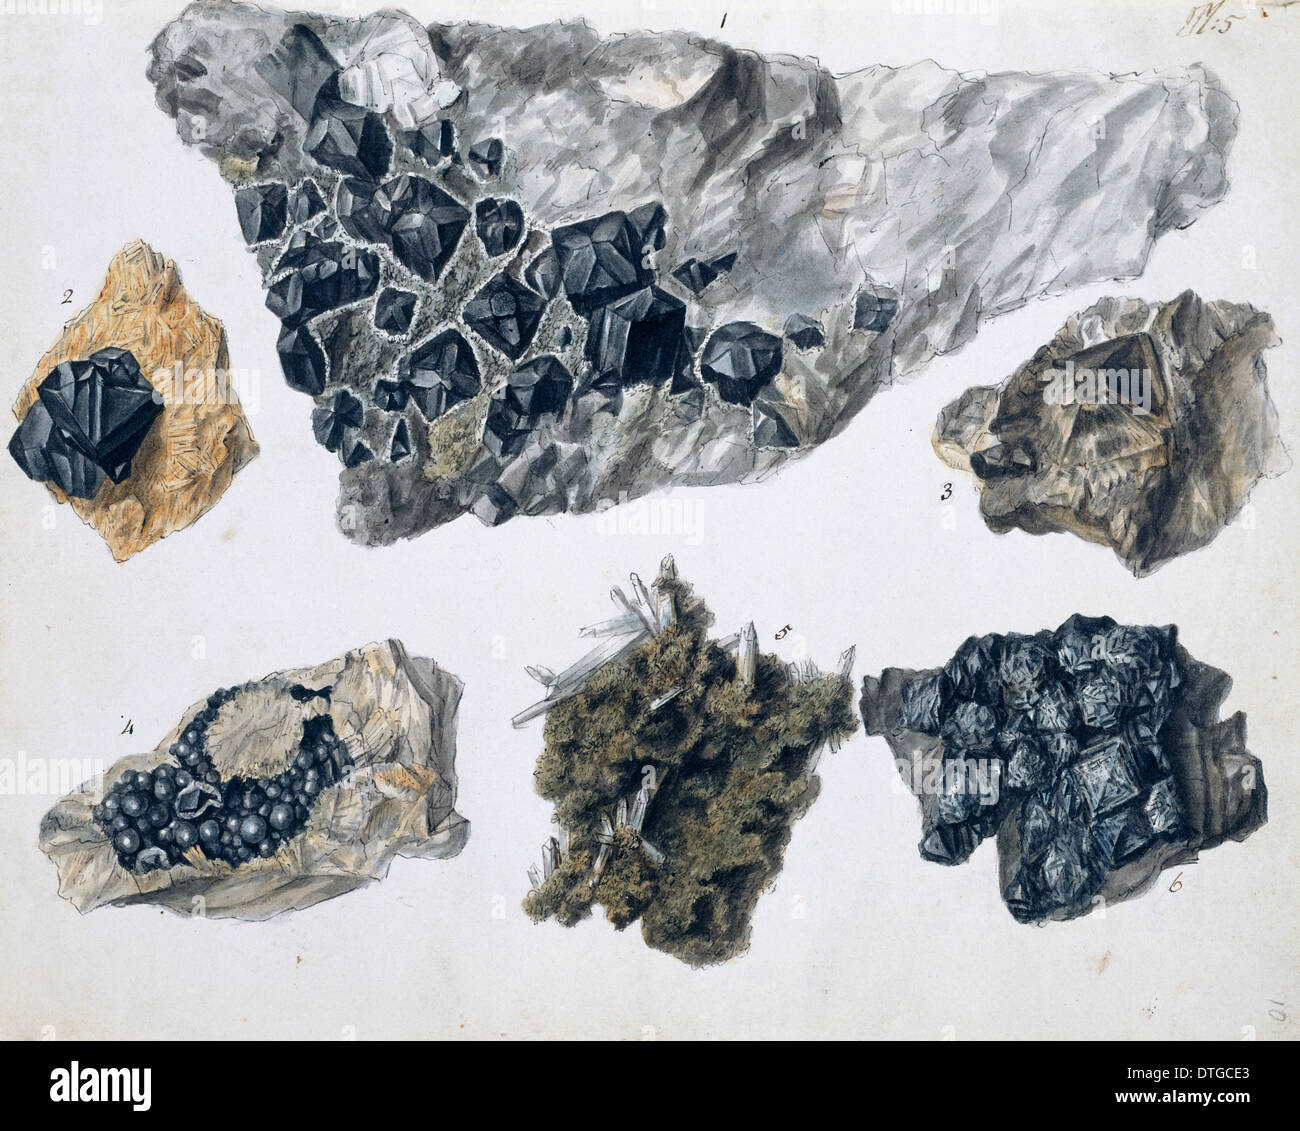 La plaque 5 à partir de spécimens de minéraux britannique ? Tome 1 par P. Rashleigh (1797) Banque D'Images